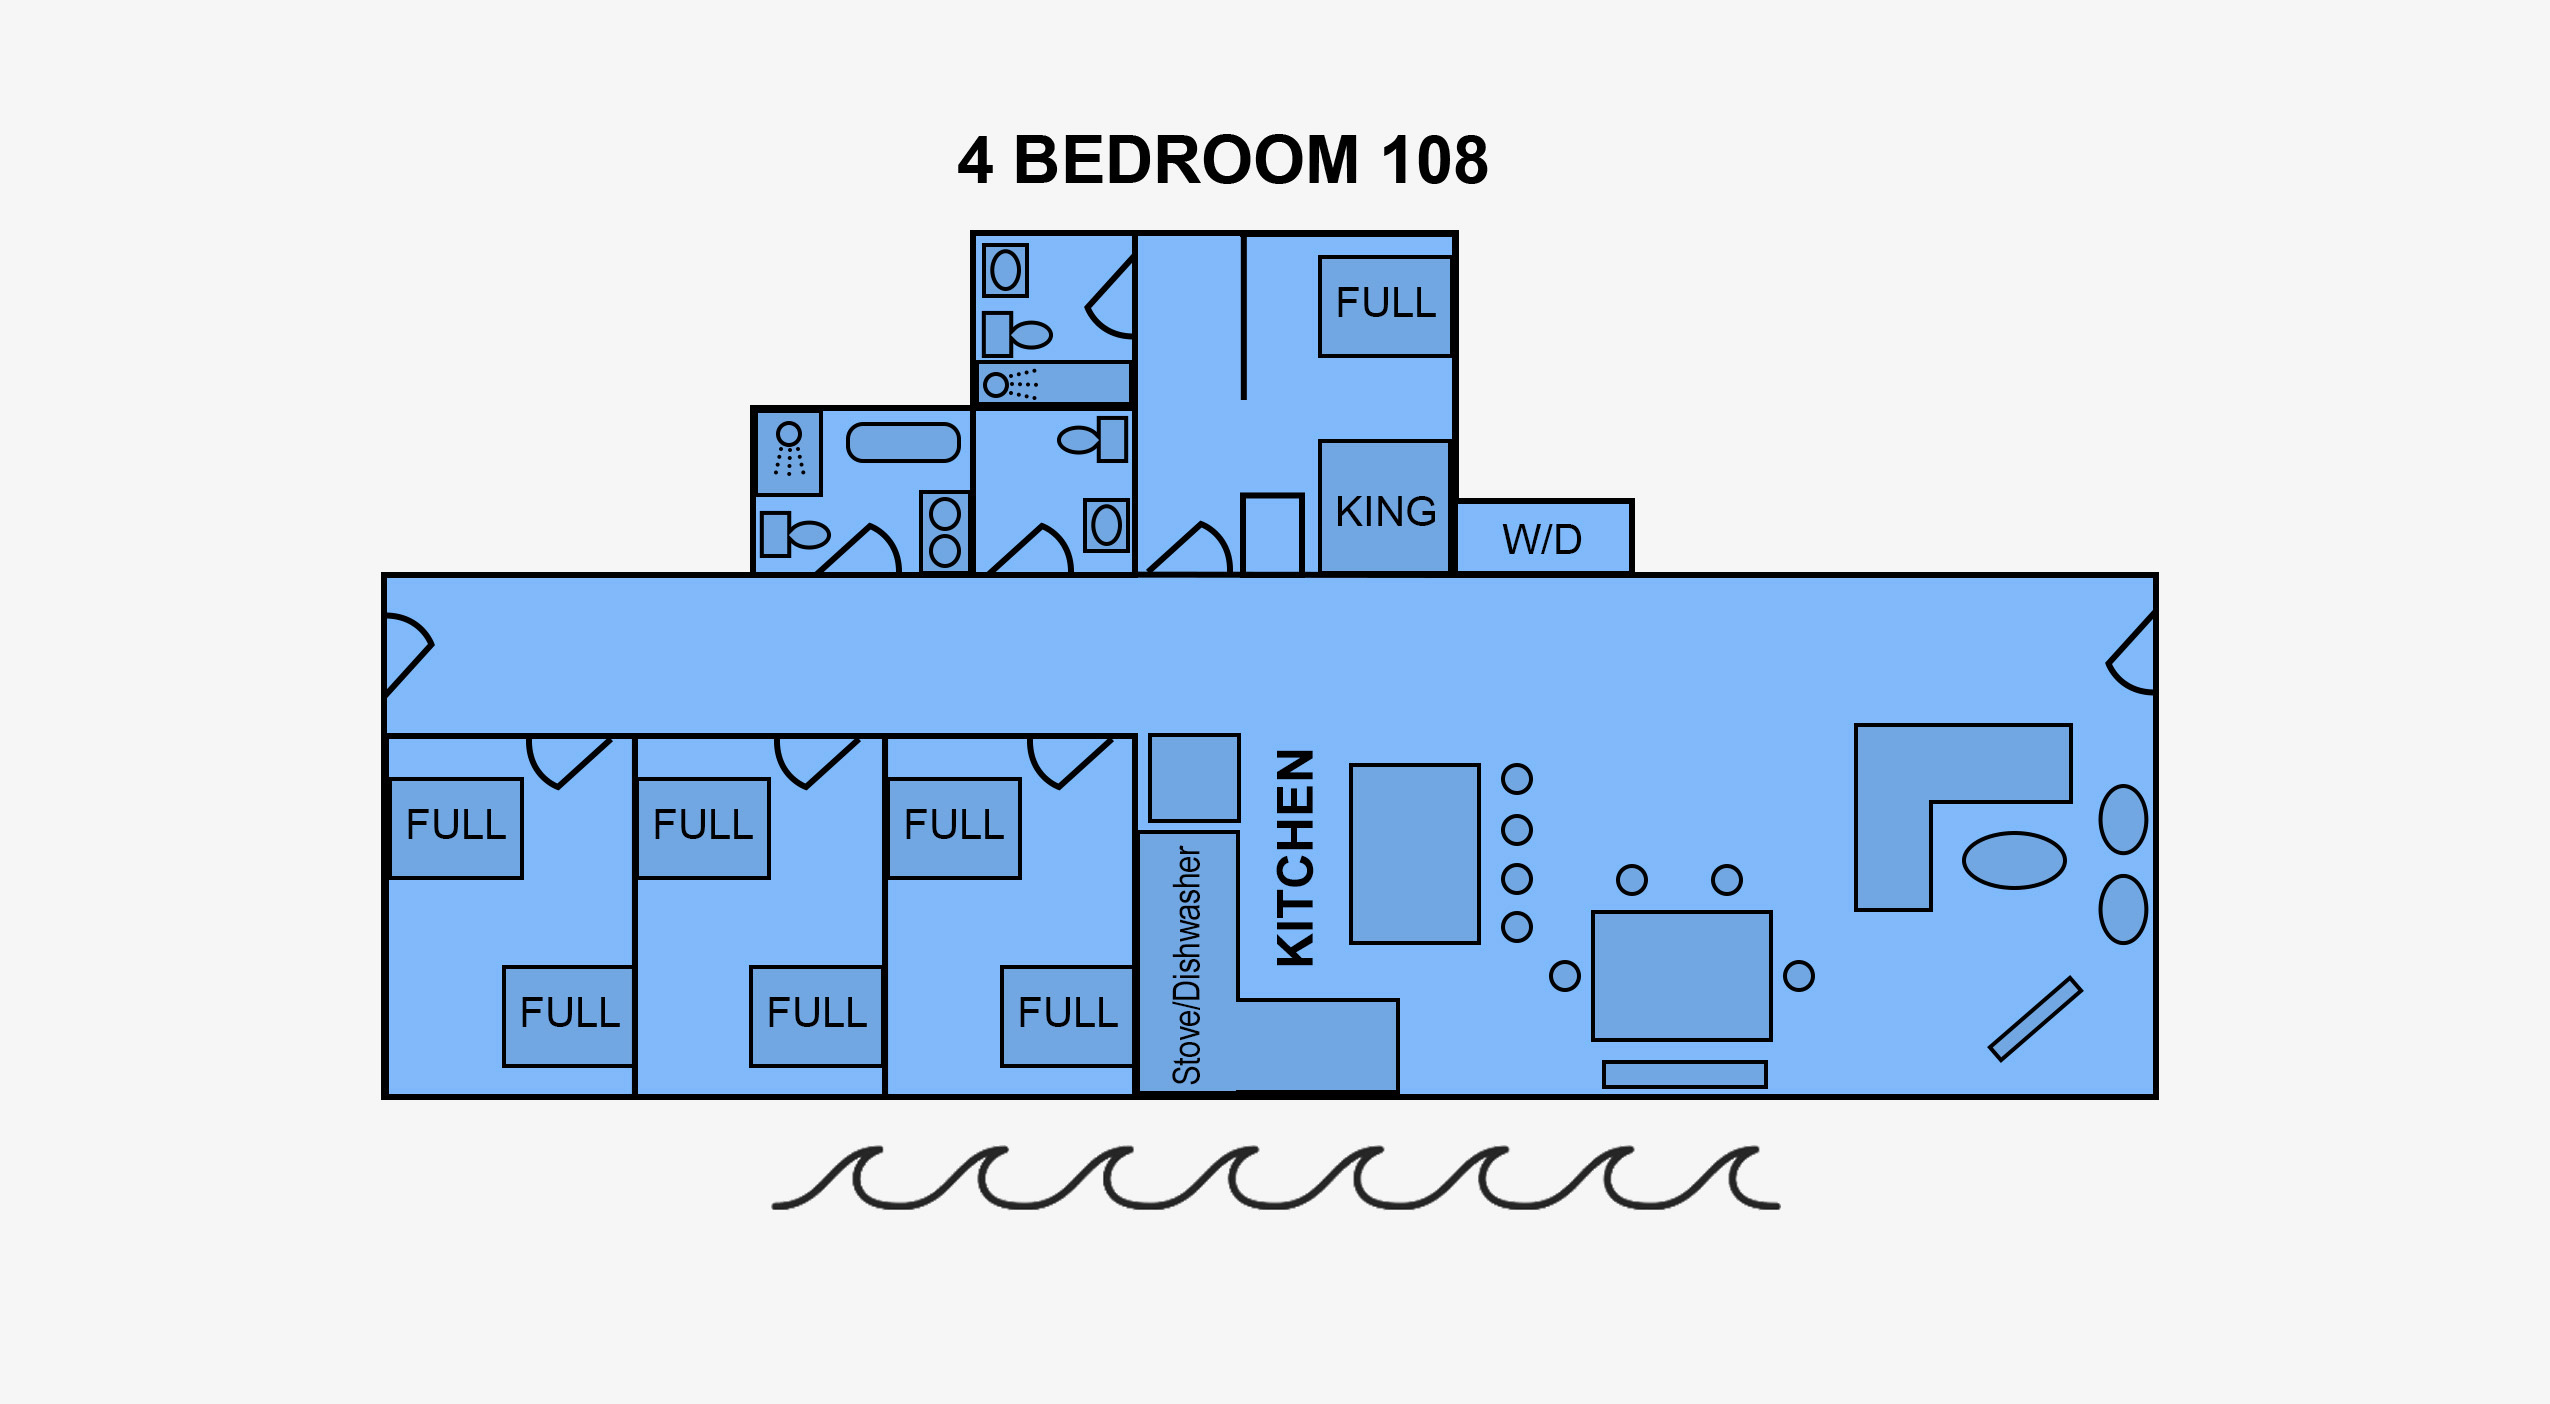 4 Bedroom Suite Floorplan